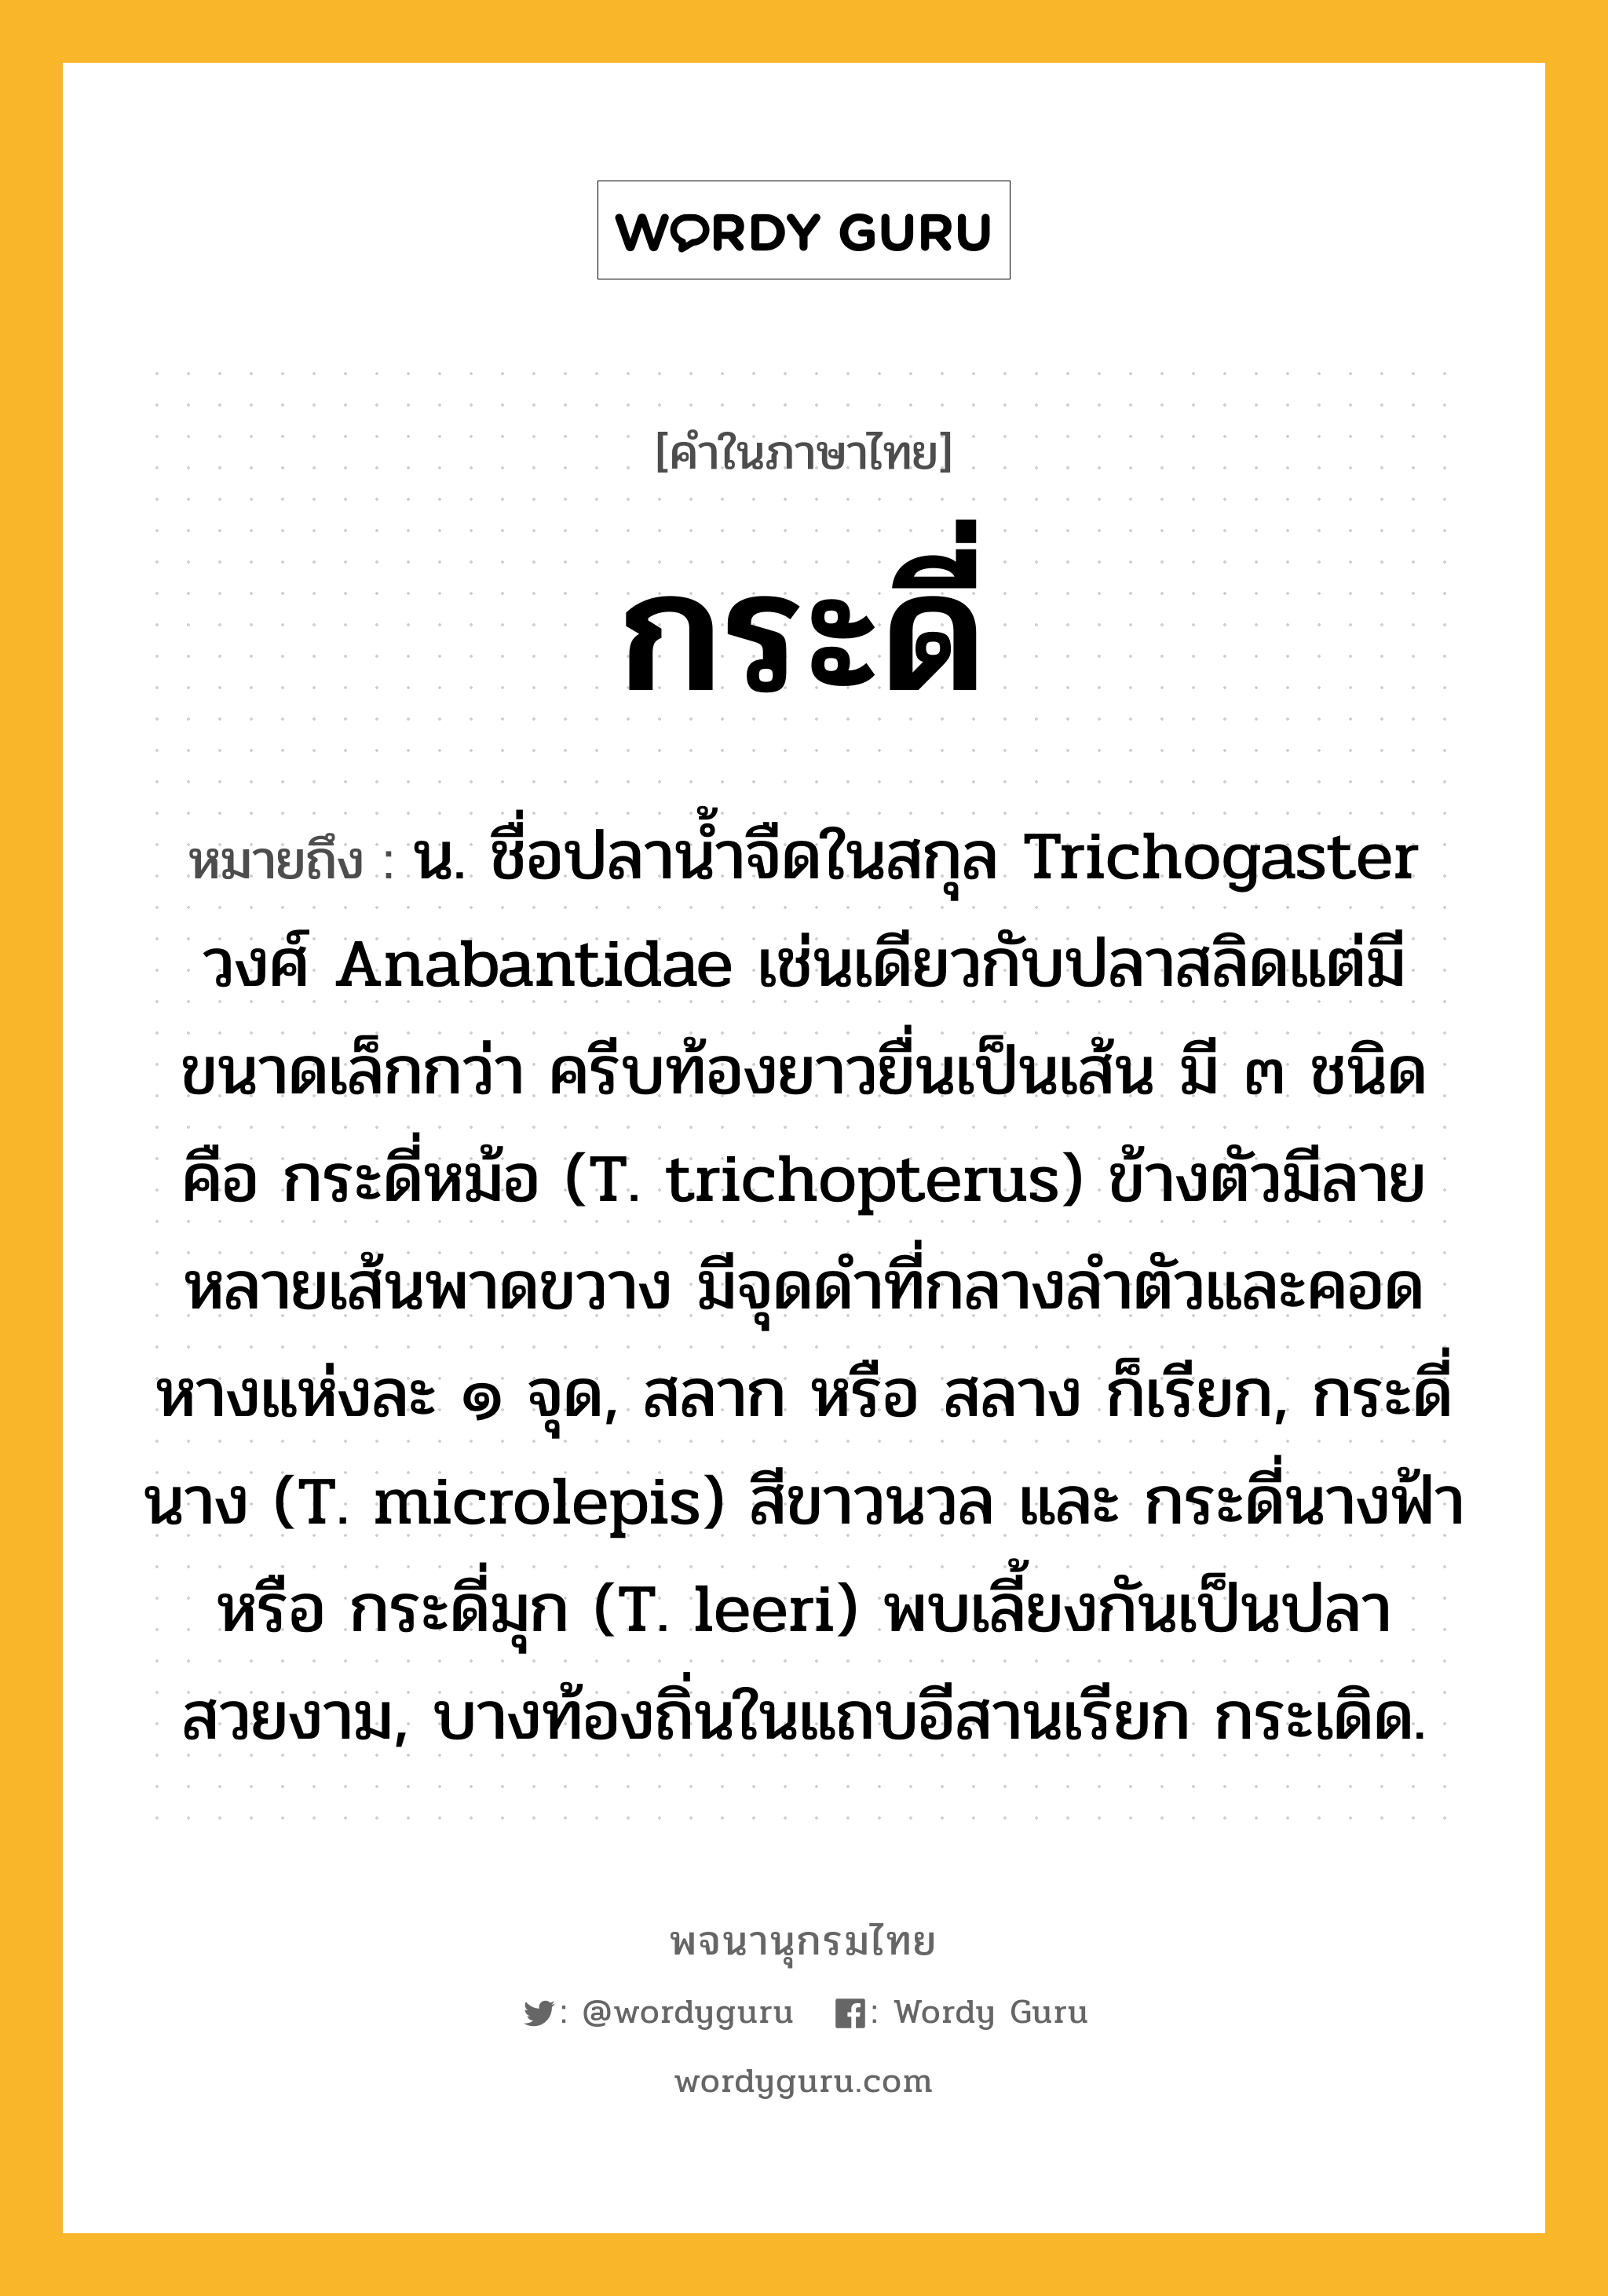 กระดี่ ความหมาย หมายถึงอะไร?, คำในภาษาไทย กระดี่ หมายถึง น. ชื่อปลานํ้าจืดในสกุล Trichogaster วงศ์ Anabantidae เช่นเดียวกับปลาสลิดแต่มีขนาดเล็กกว่า ครีบท้องยาวยื่นเป็นเส้น มี ๓ ชนิด คือ กระดี่หม้อ (T. trichopterus) ข้างตัวมีลายหลายเส้นพาดขวาง มีจุดดําที่กลางลําตัวและคอดหางแห่งละ ๑ จุด, สลาก หรือ สลาง ก็เรียก, กระดี่นาง (T. microlepis) สีขาวนวล และ กระดี่นางฟ้า หรือ กระดี่มุก (T. leeri) พบเลี้ยงกันเป็นปลาสวยงาม, บางท้องถิ่นในแถบอีสานเรียก กระเดิด.